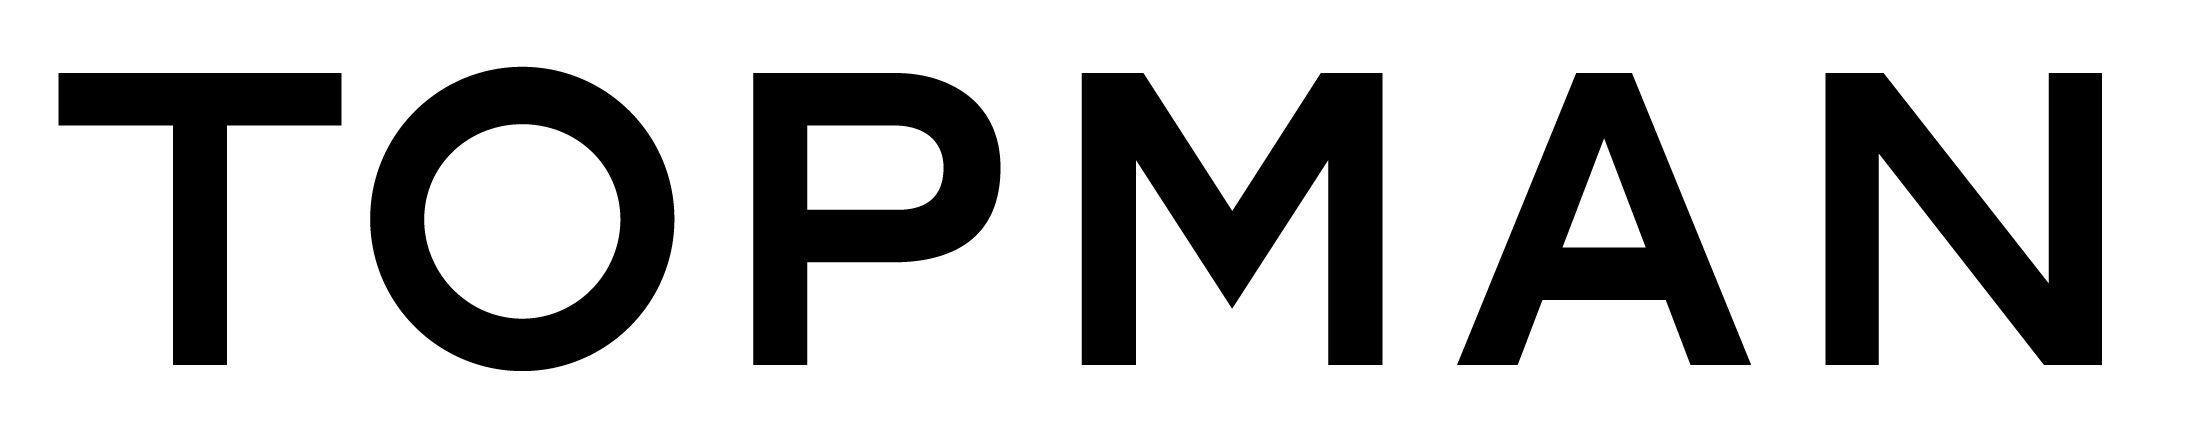 Topman Logo - topman logo | MEGA Brands | Fashion, Logos, Fashion brands